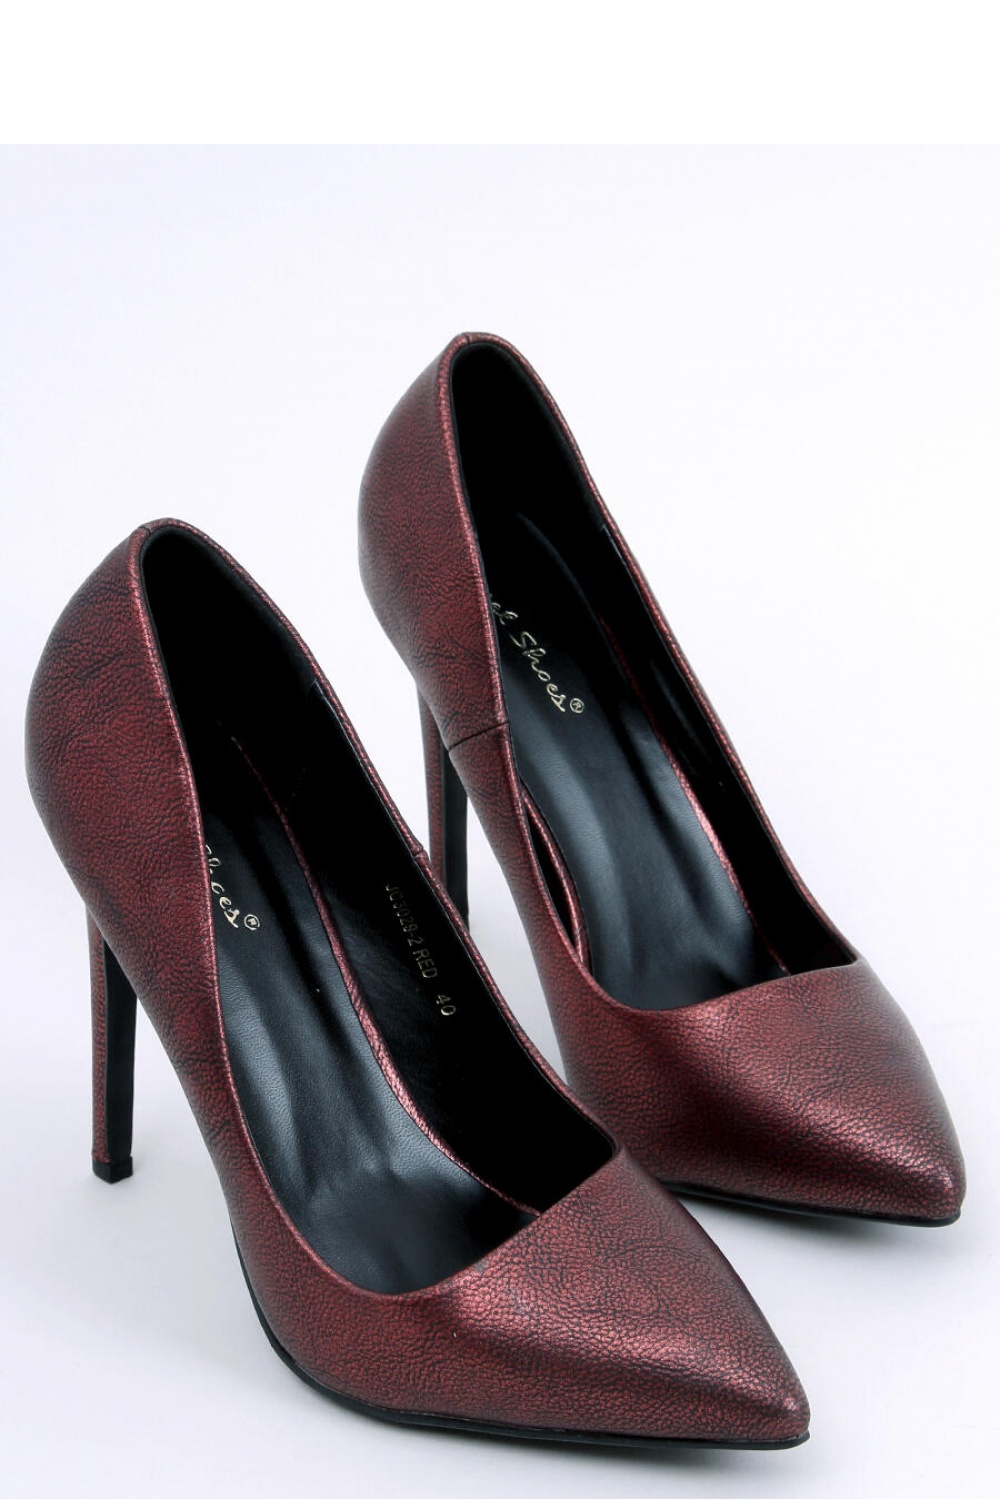 High heels model 174121 Inello